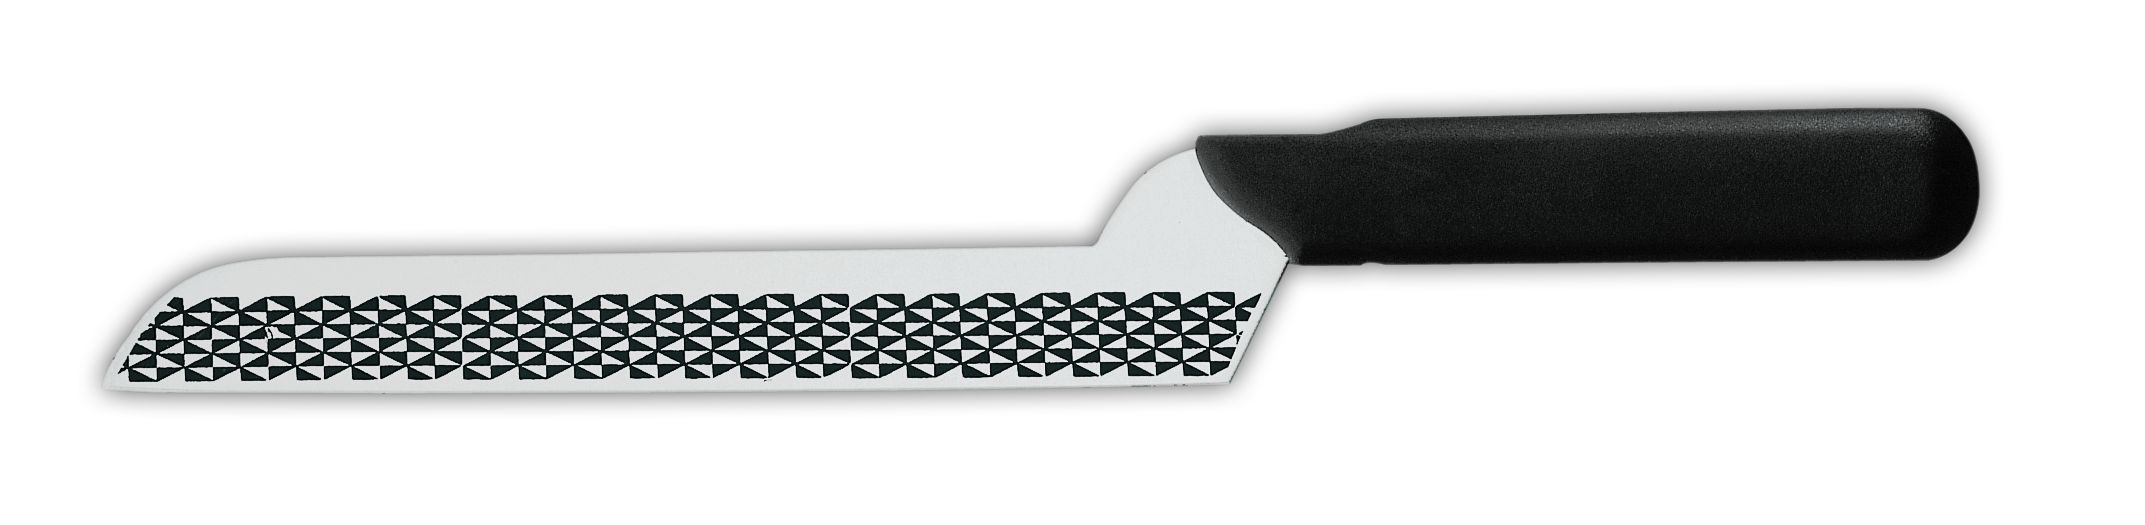 Нож для сыра 9605g, лезвие с травлением, 20 см,  черная рукоятка